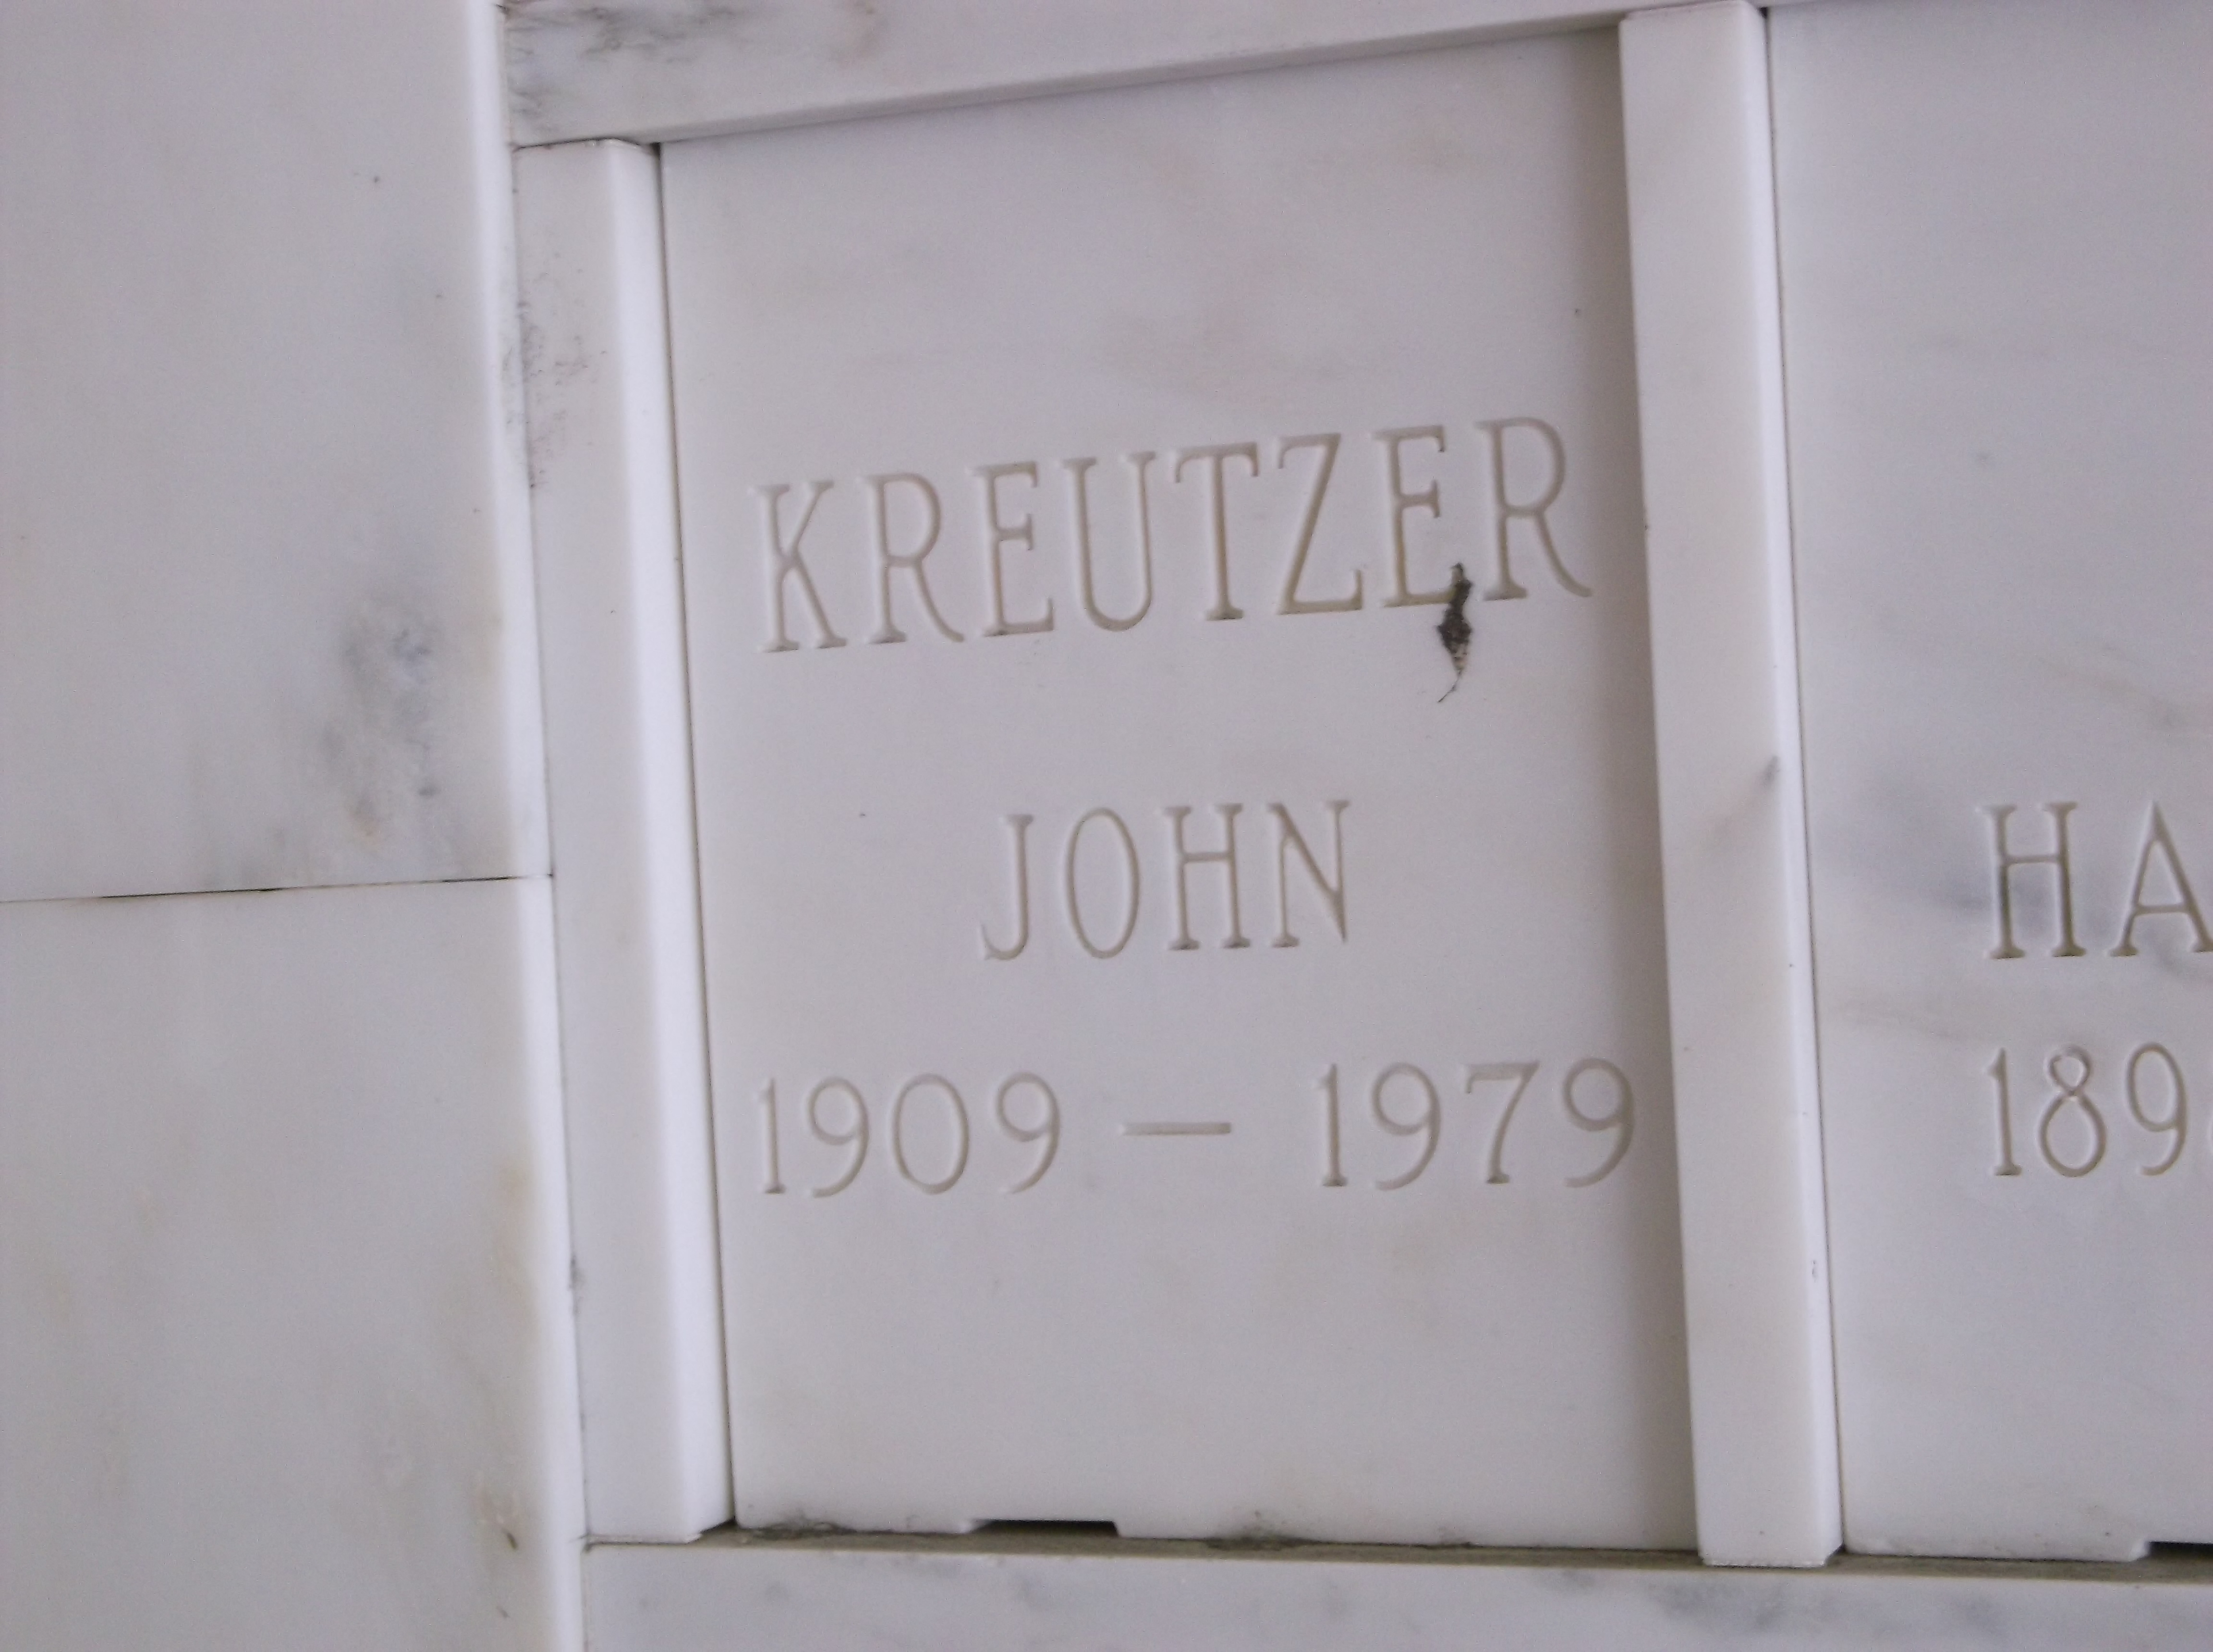 John Kreutzer